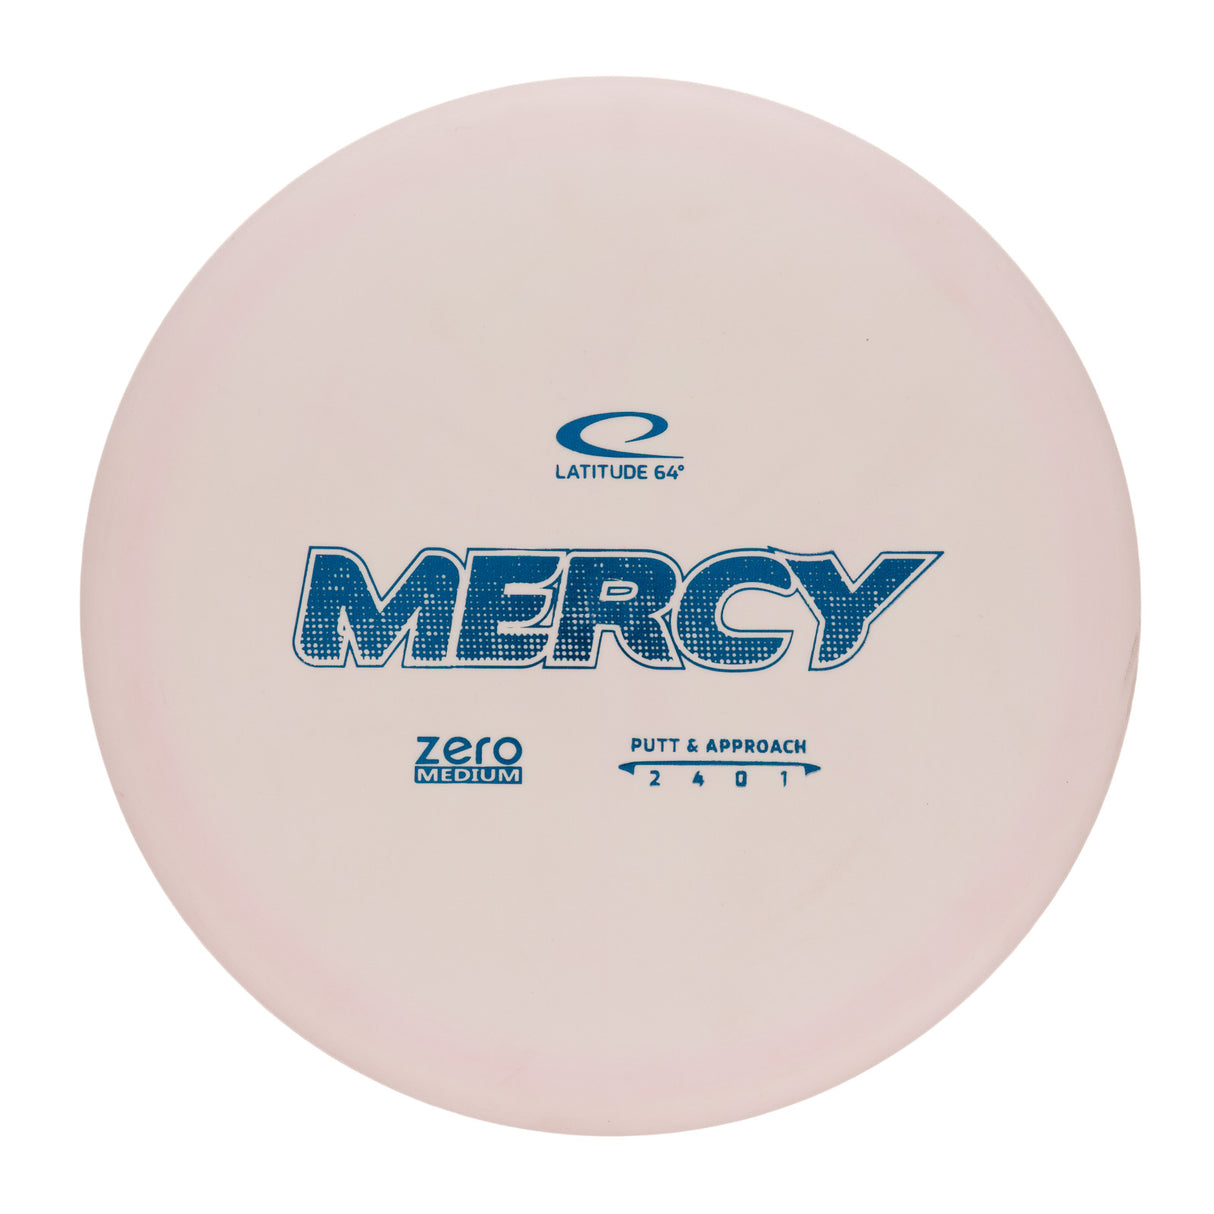 Latitude 64 Mercy - Zero Medium 174g | Style 0001